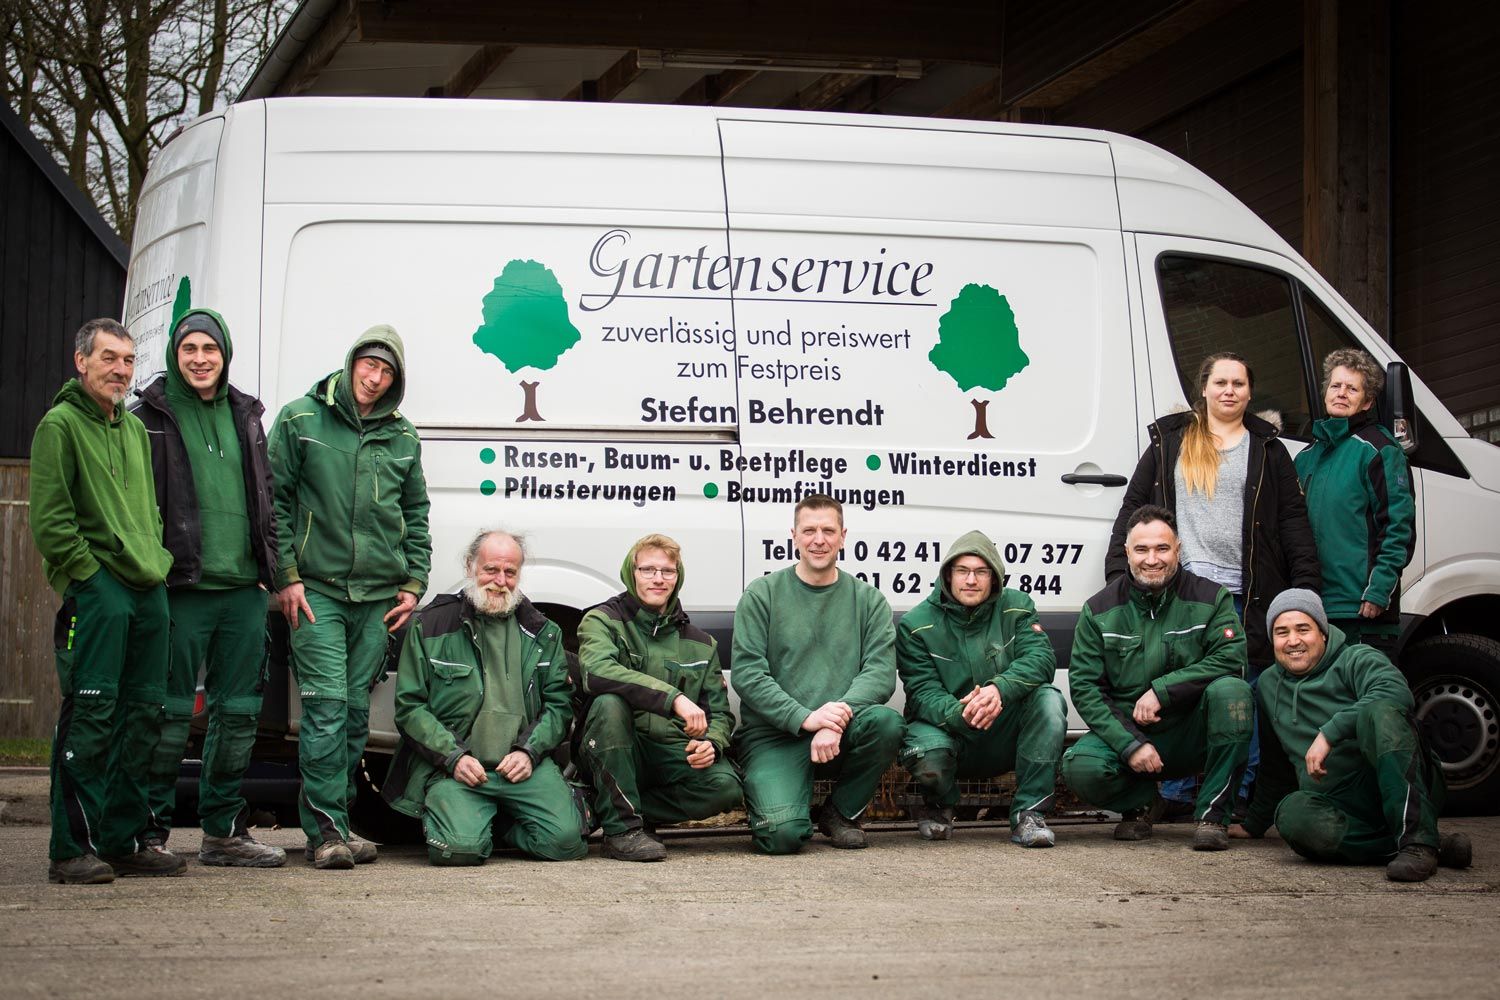 Gartenservice-Team